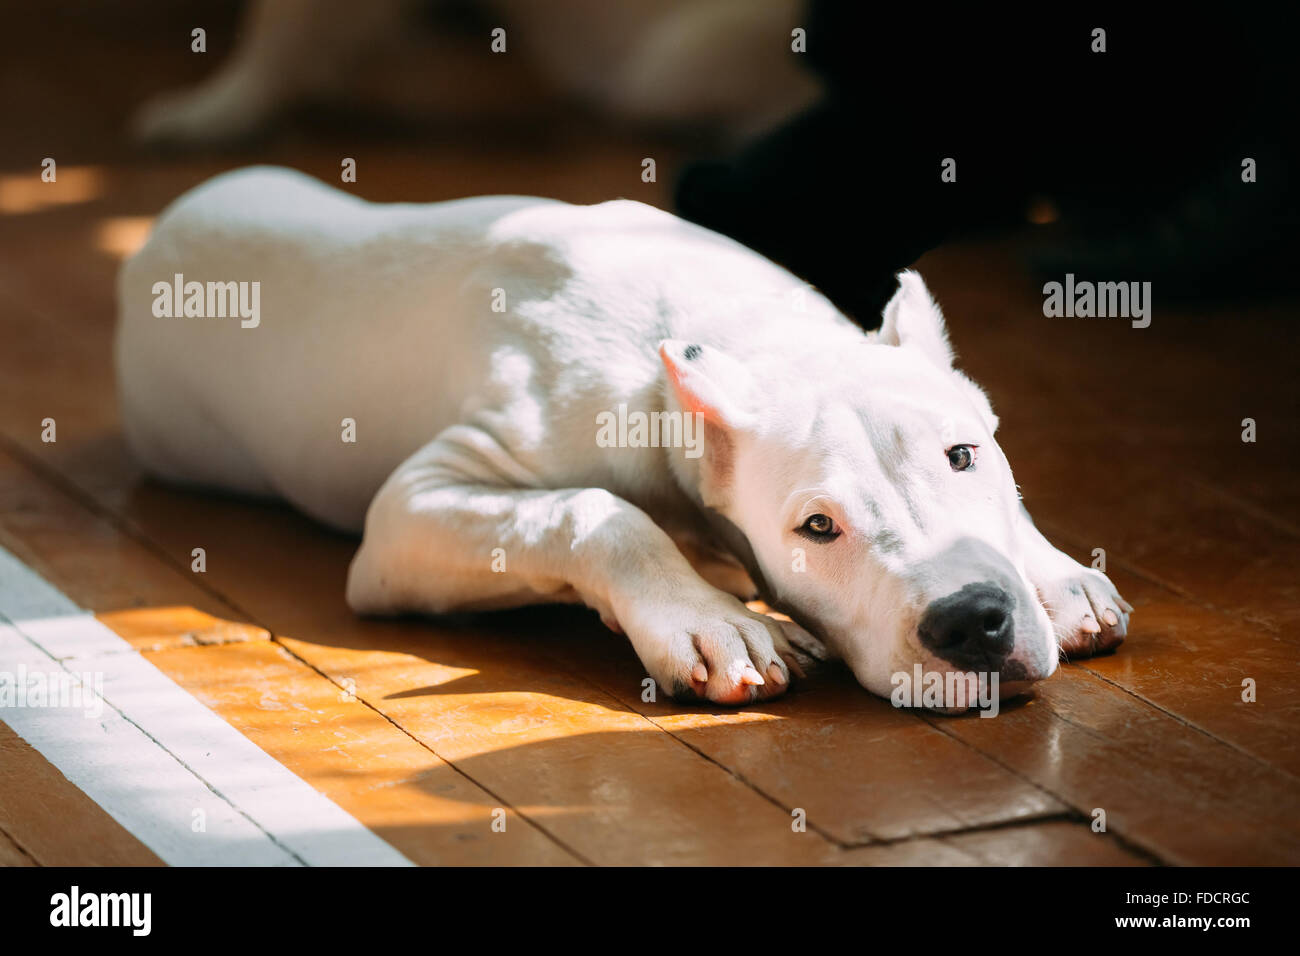 Le Dogo Argentino également connu sous le nom de Dogue Argentin est un grand chien blanc, musculaire qui a été développé principalement en Argentine Banque D'Images